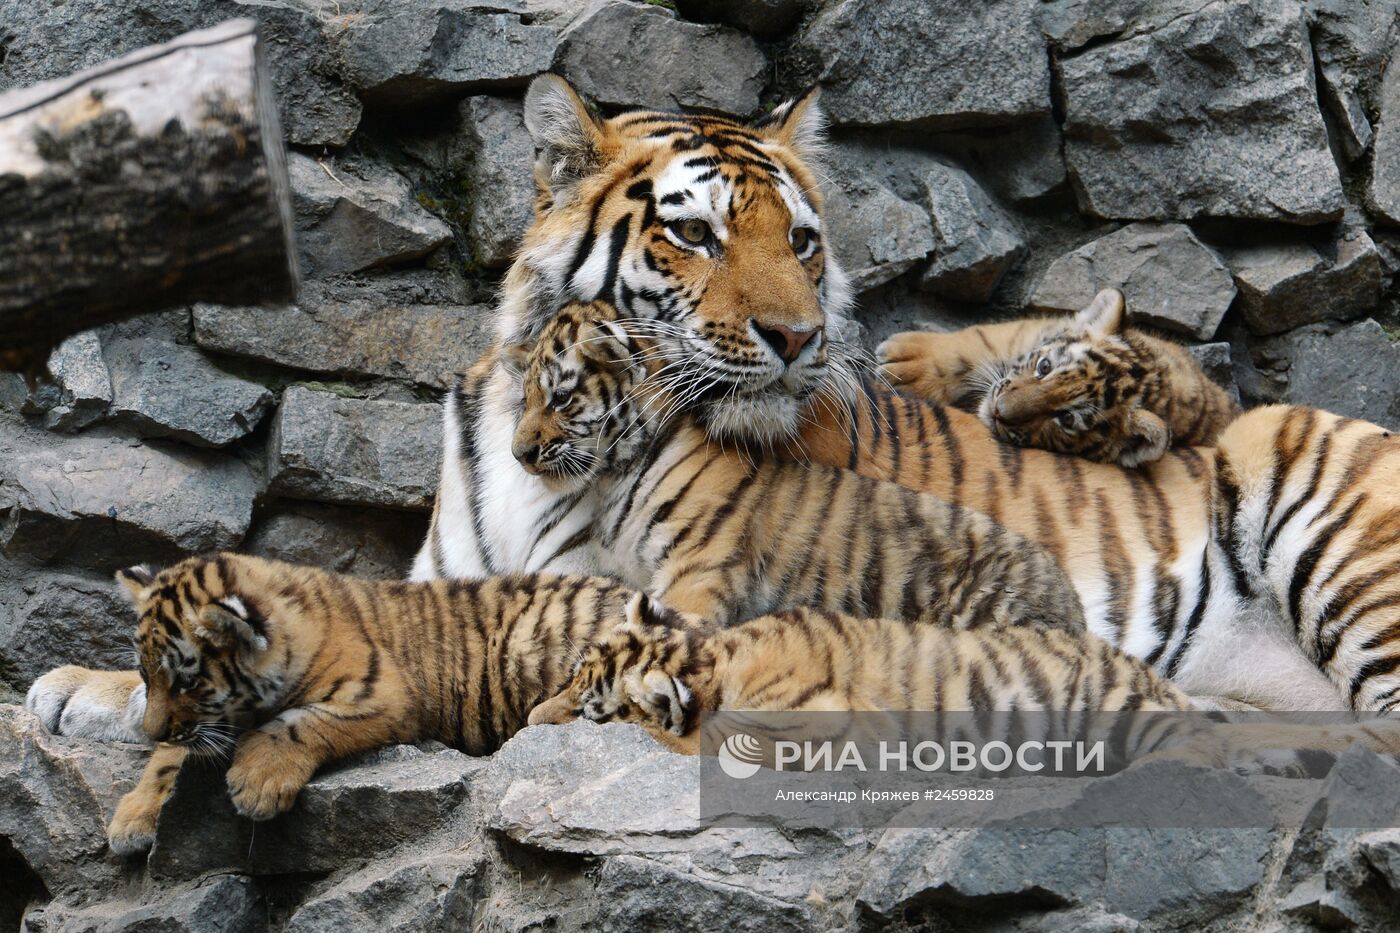 Детеныши амурских тигрят родились в Новосибирске